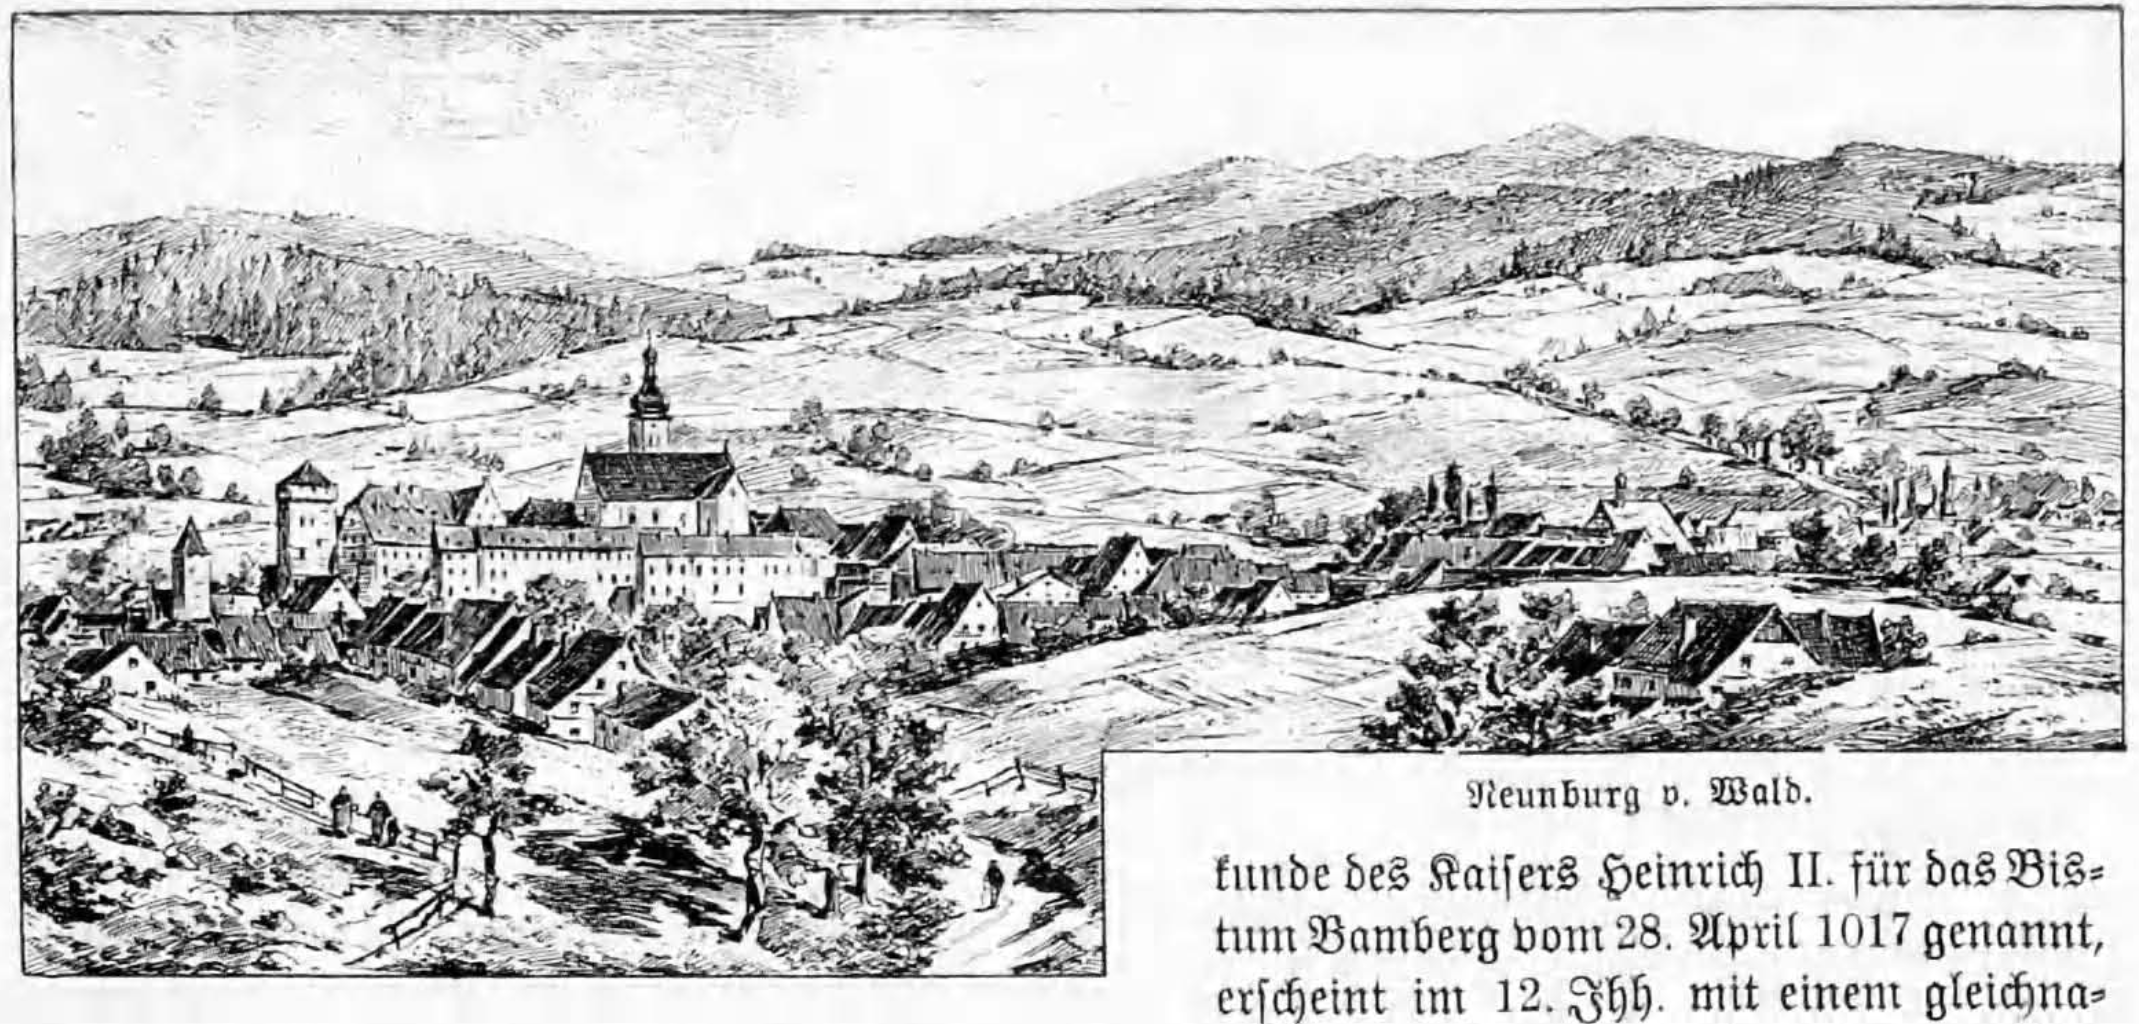 Holzstich von Neunburg aus "Geographisch-historisches Handbuch von Bayern" von Wilhelm Götz"